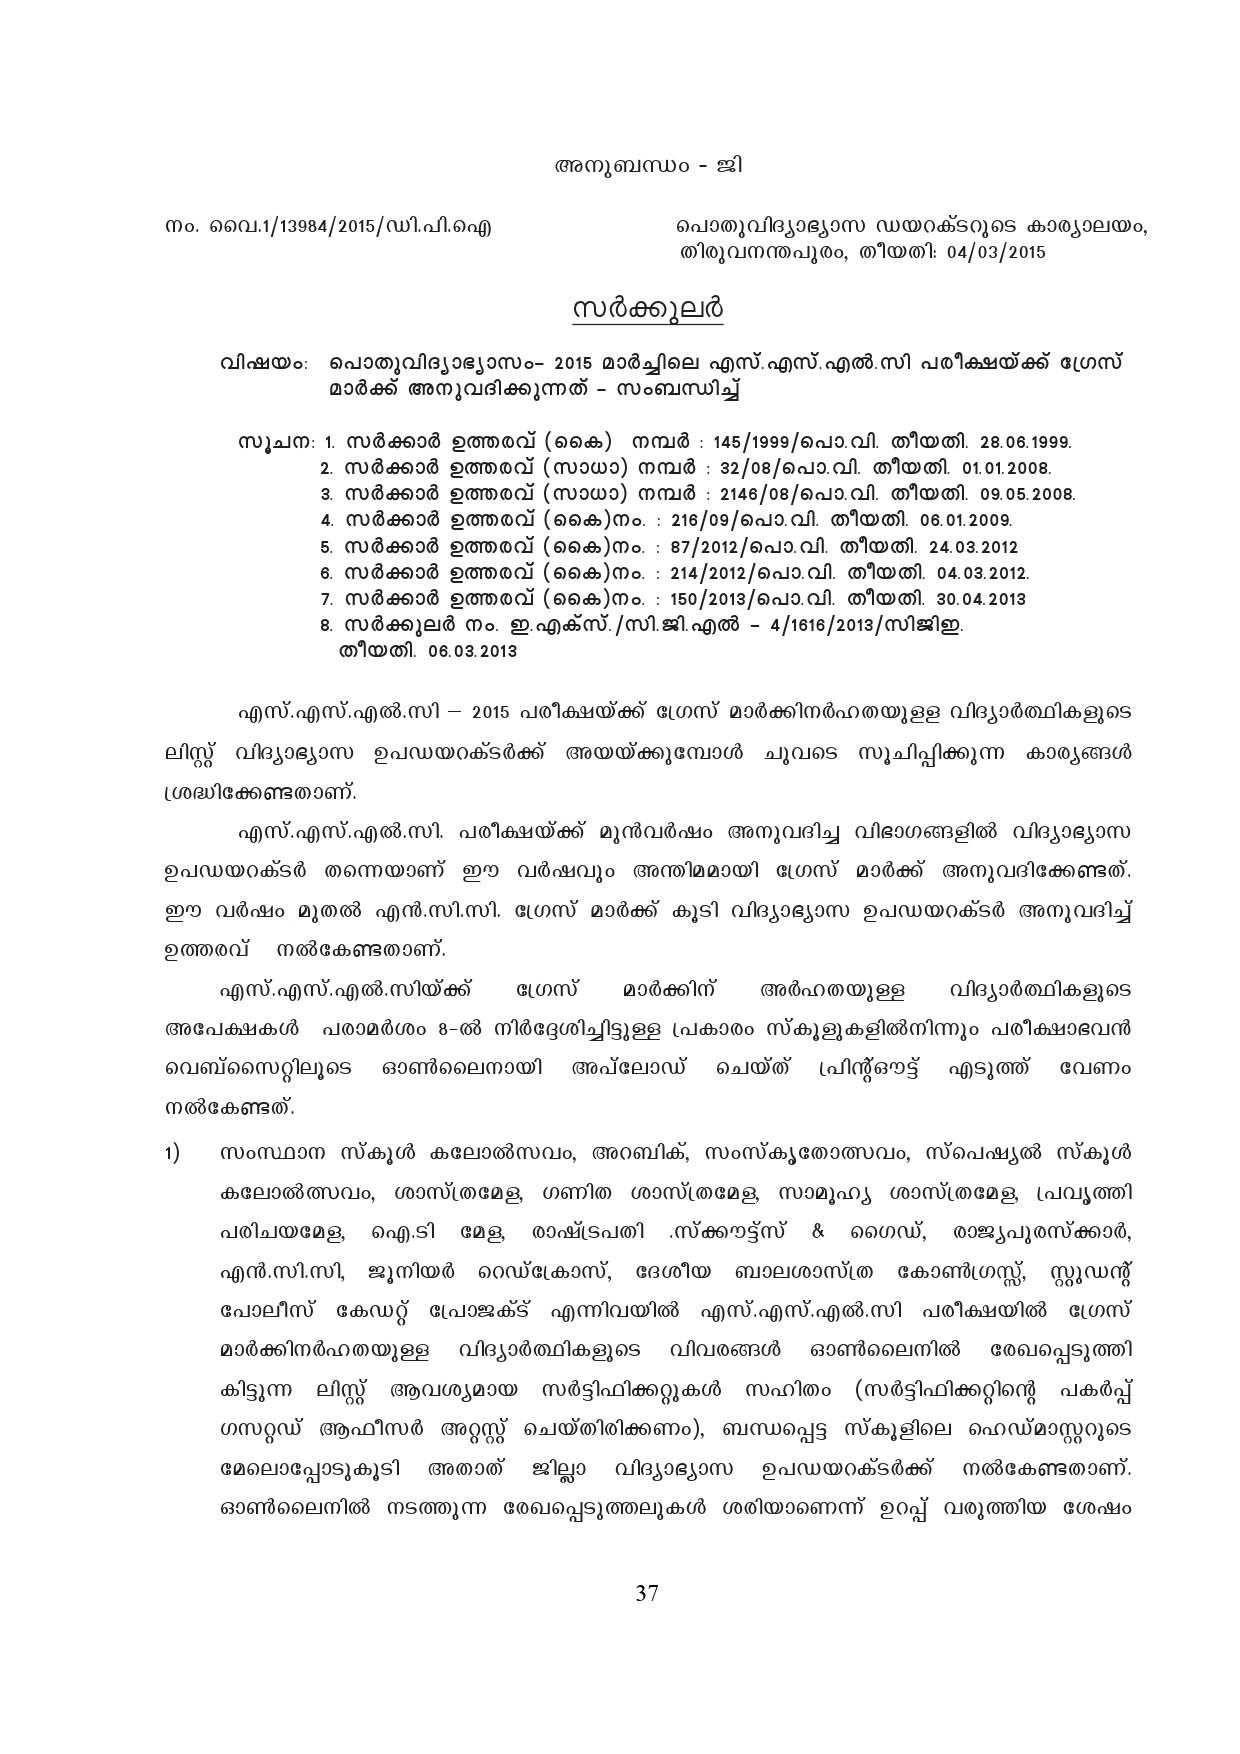 Kerala SSLC Exam Result 2019 - Notification Image 37